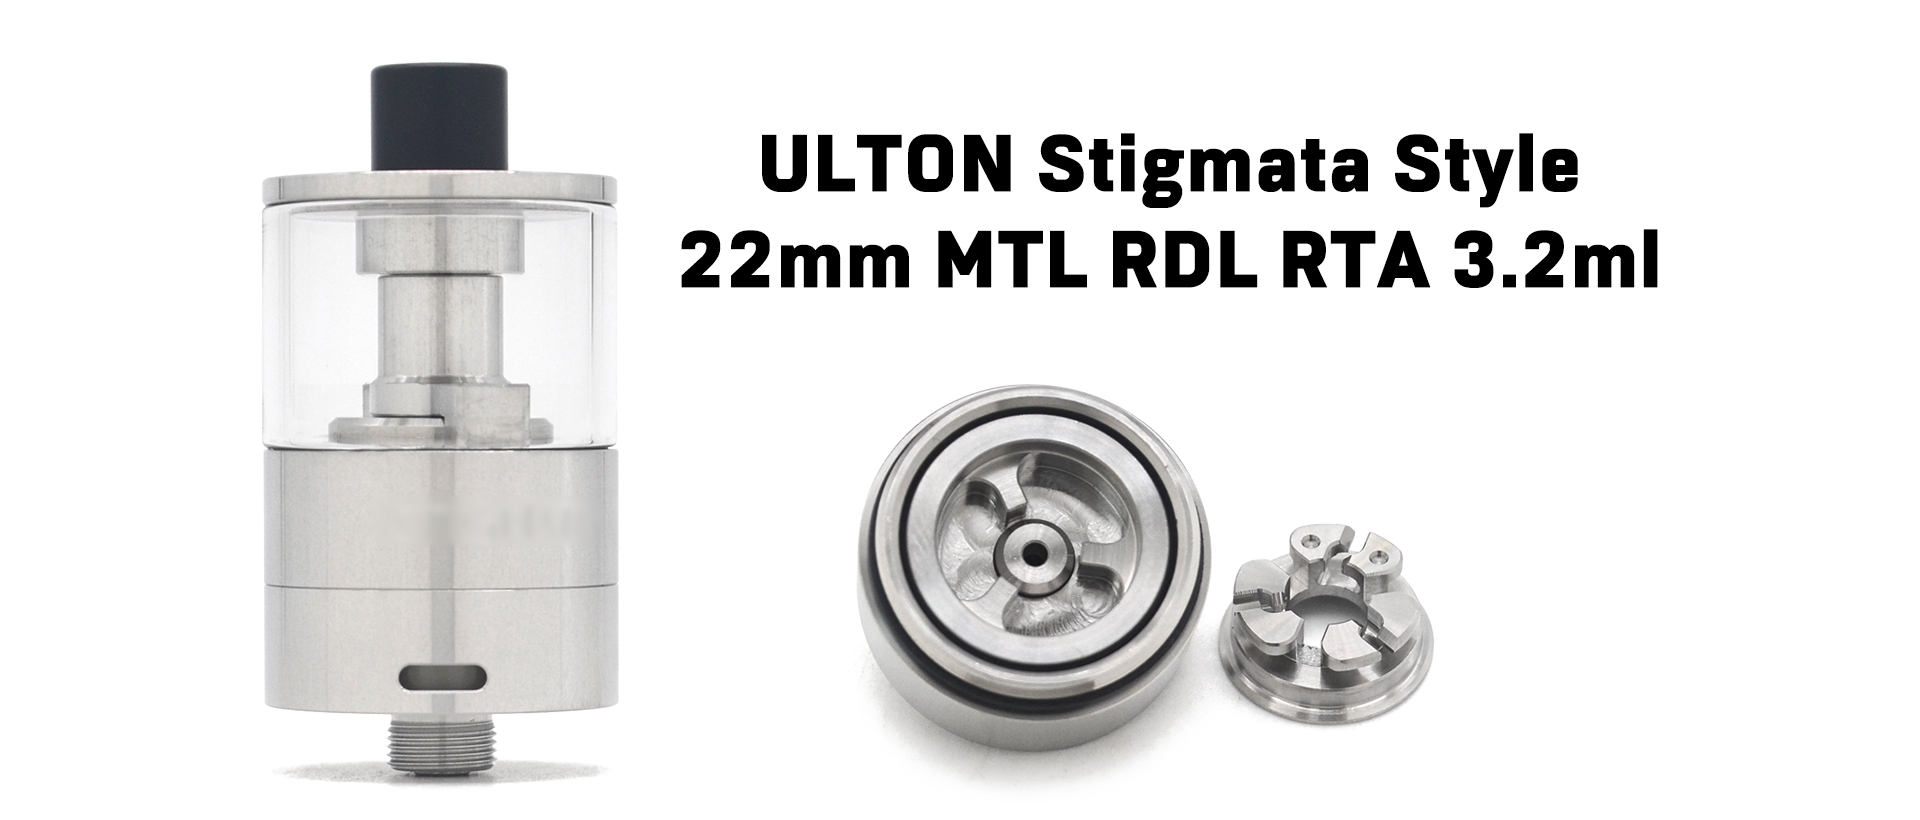 ULTON Stigmata Style 22mm MTL RDL RTA